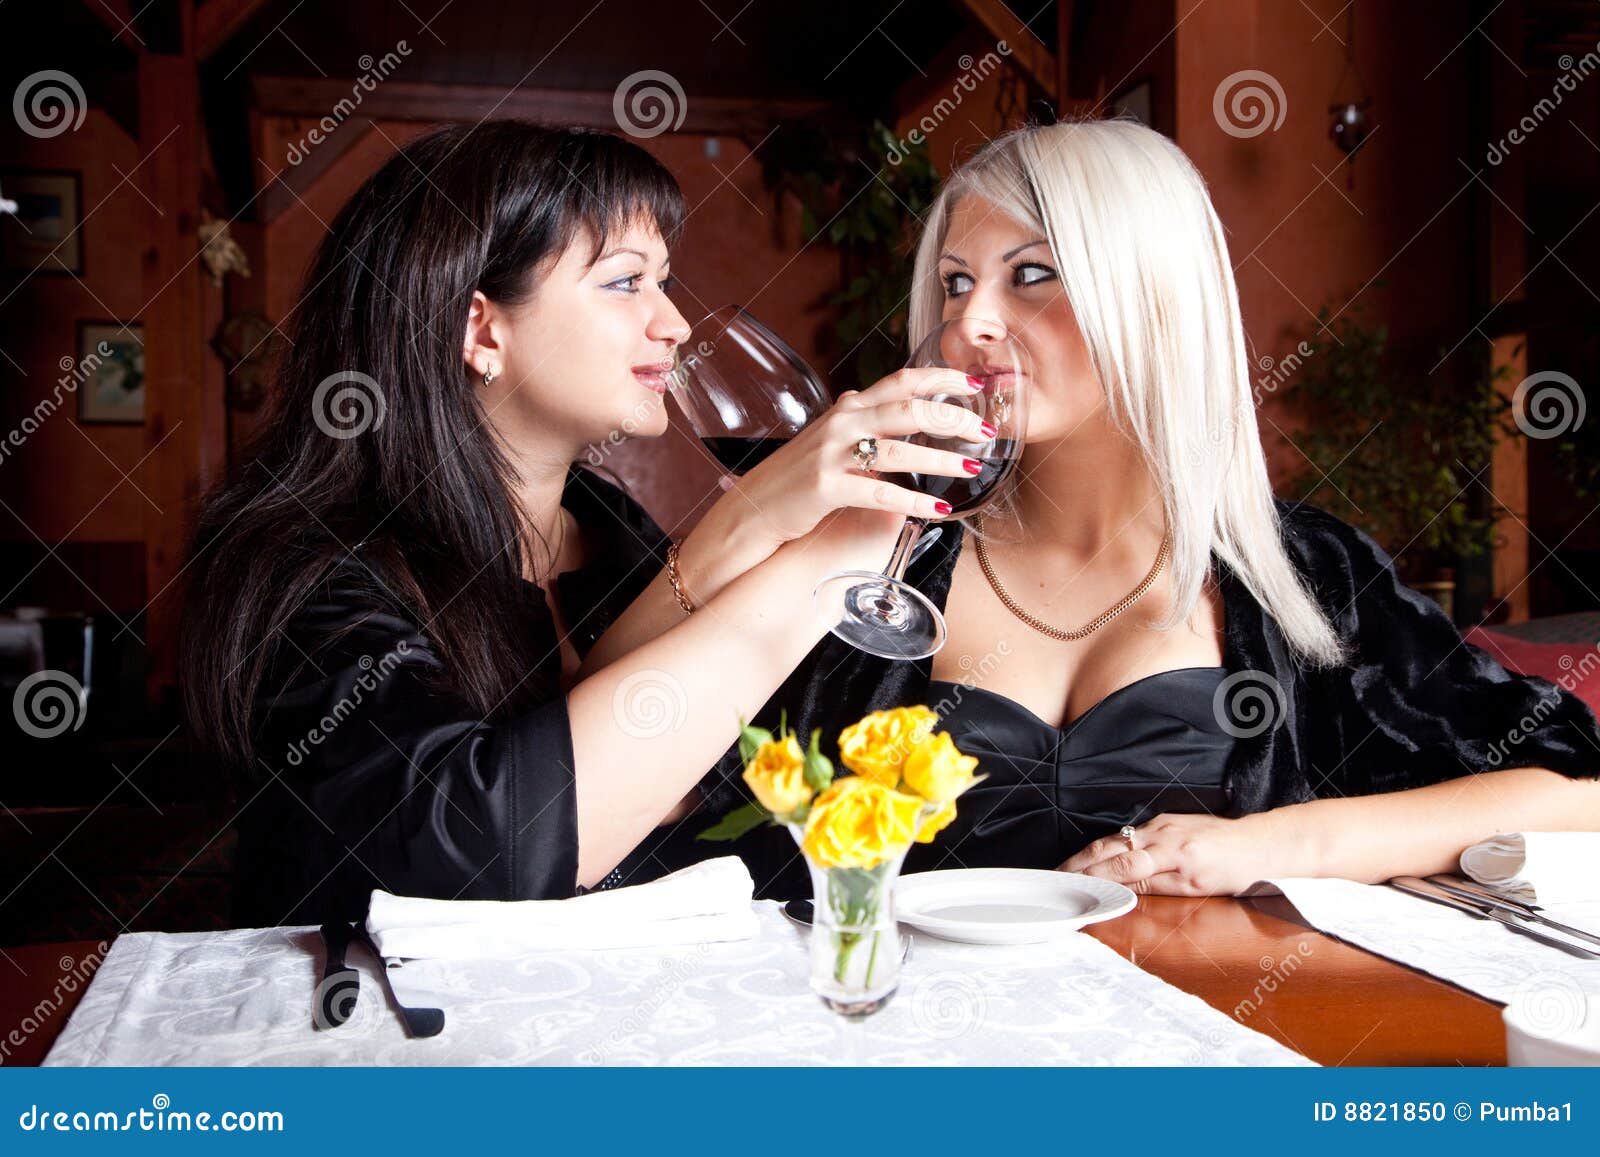 лесби пьют женщины фото 5